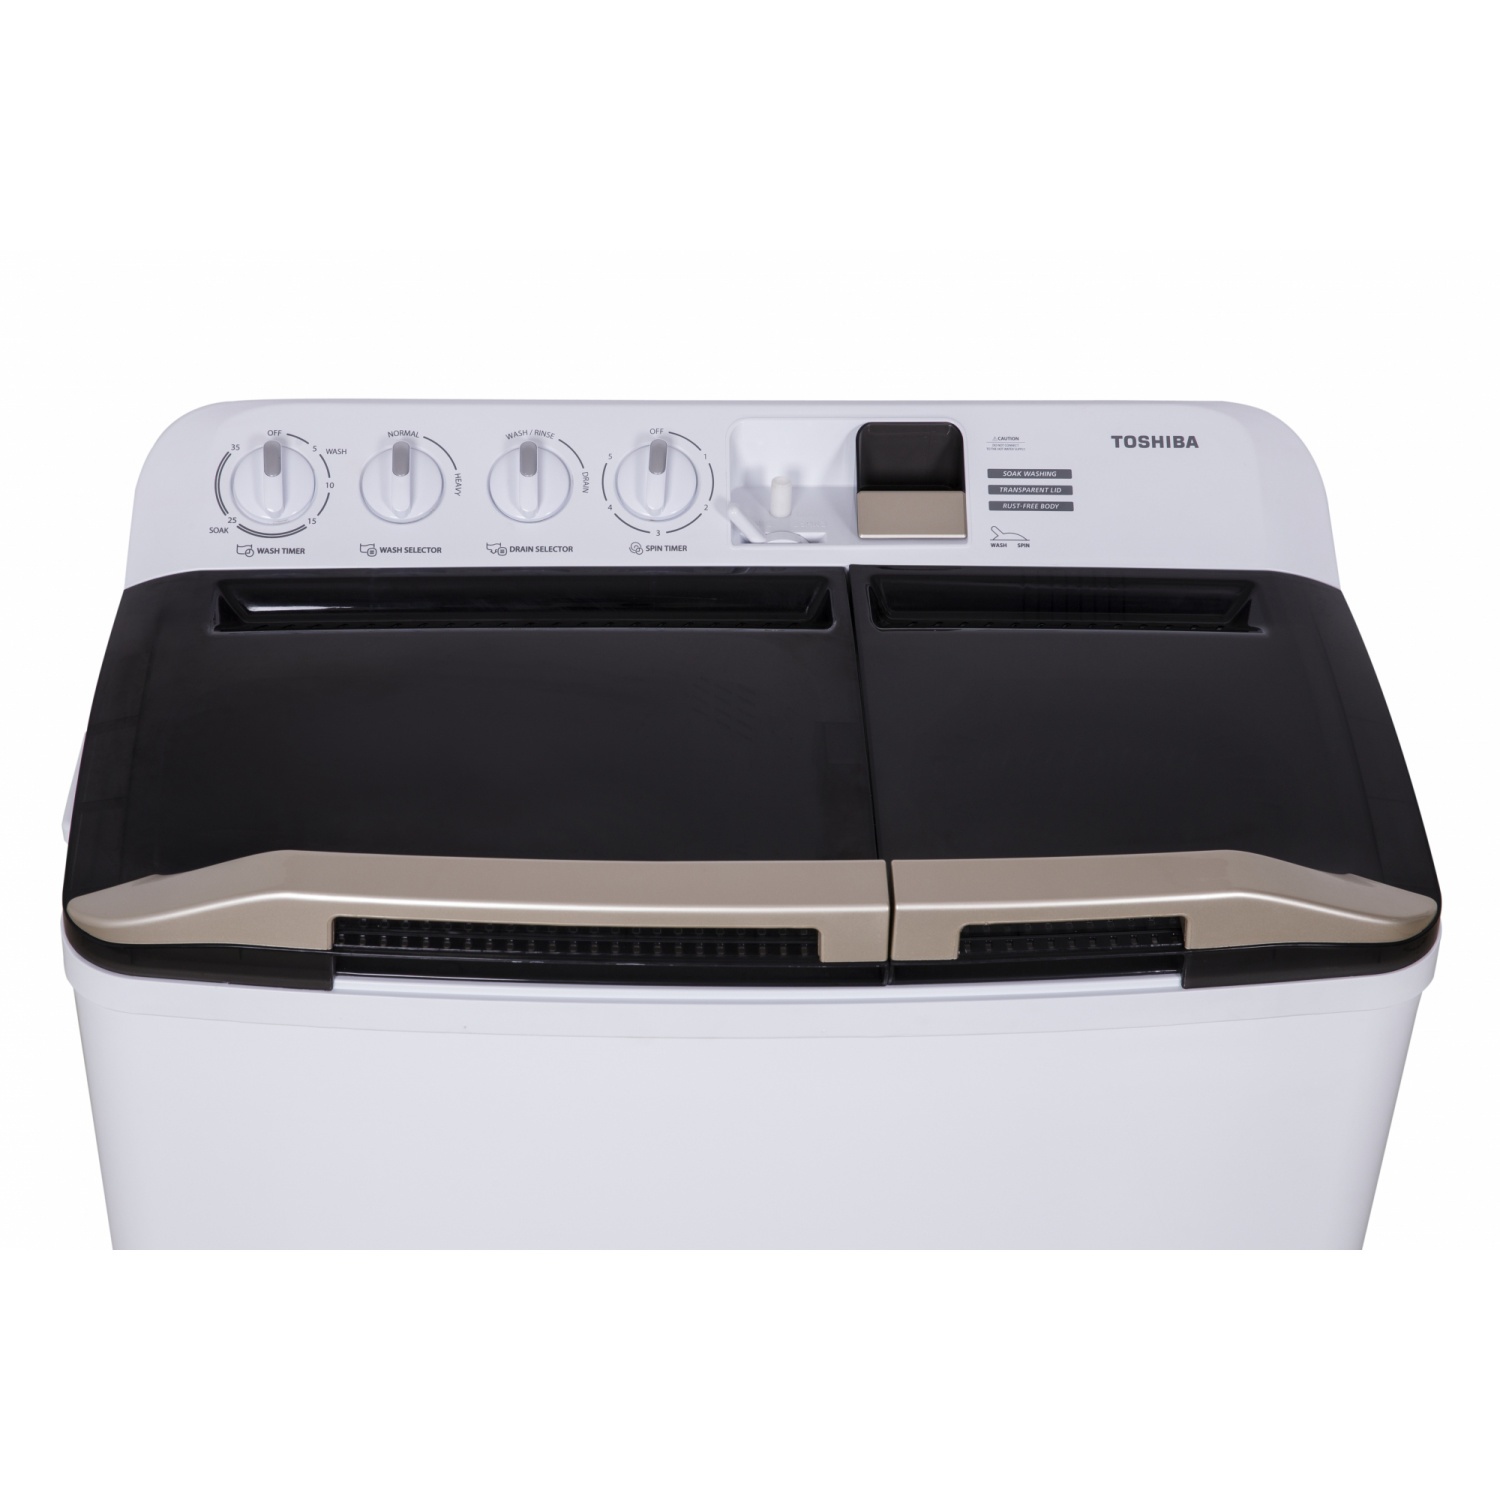 TOSHIBA เครื่องซักผ้า 2 ถัง 13kg. VH-H140WT สีขาว